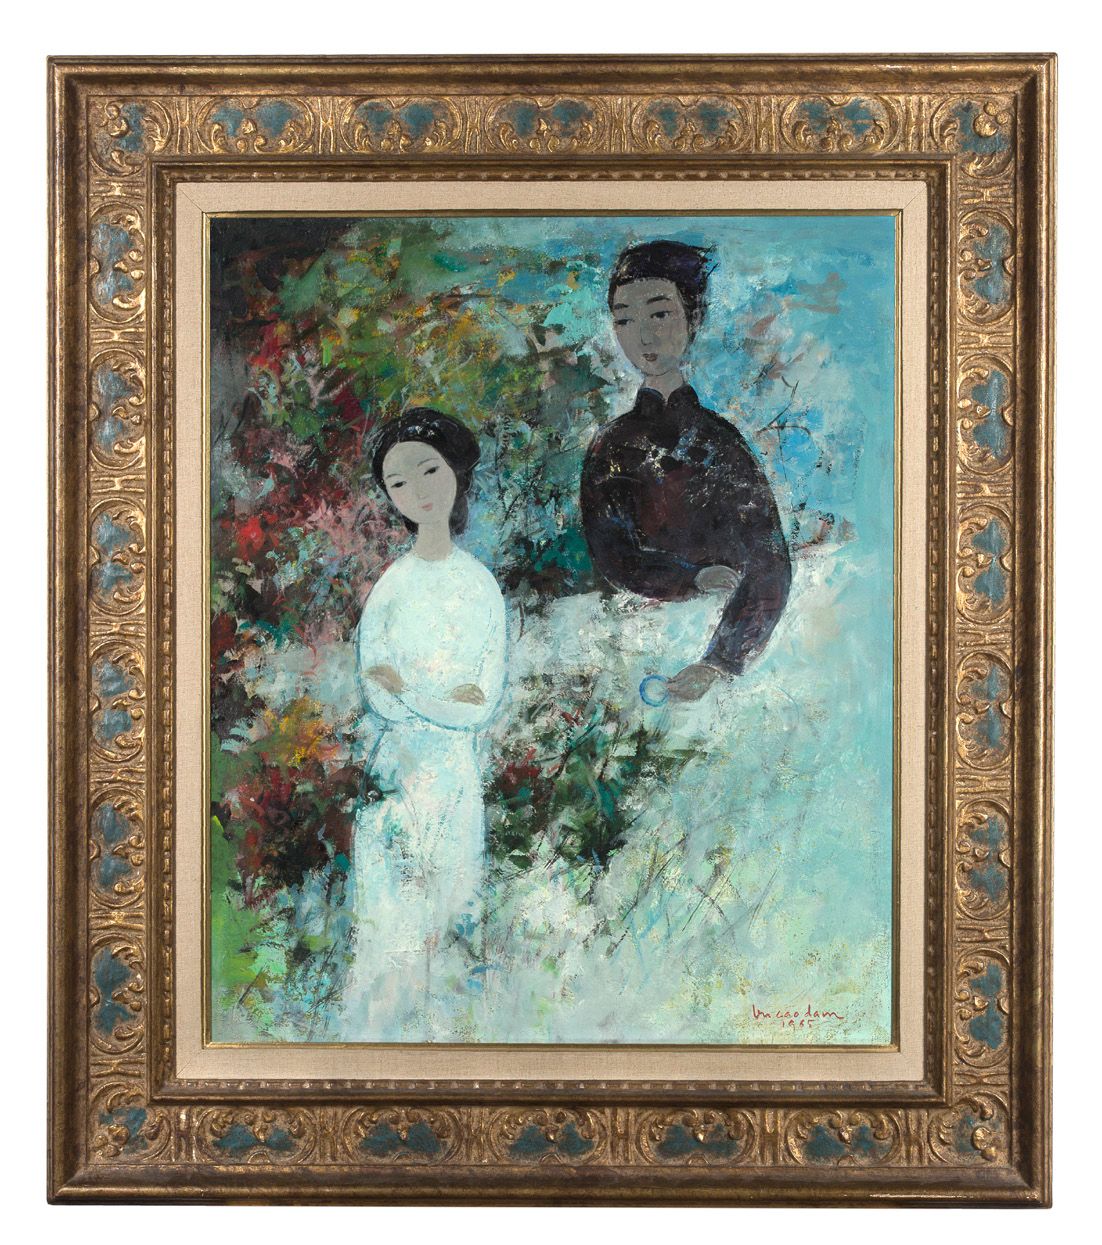 VŨ CAO ĐÀM (1908-2000) 玉环》，1965年
布面油画，右下方有签名和日期 
55,5 x 46 cm - 21 7/8 x 18 1/8 &hellip;